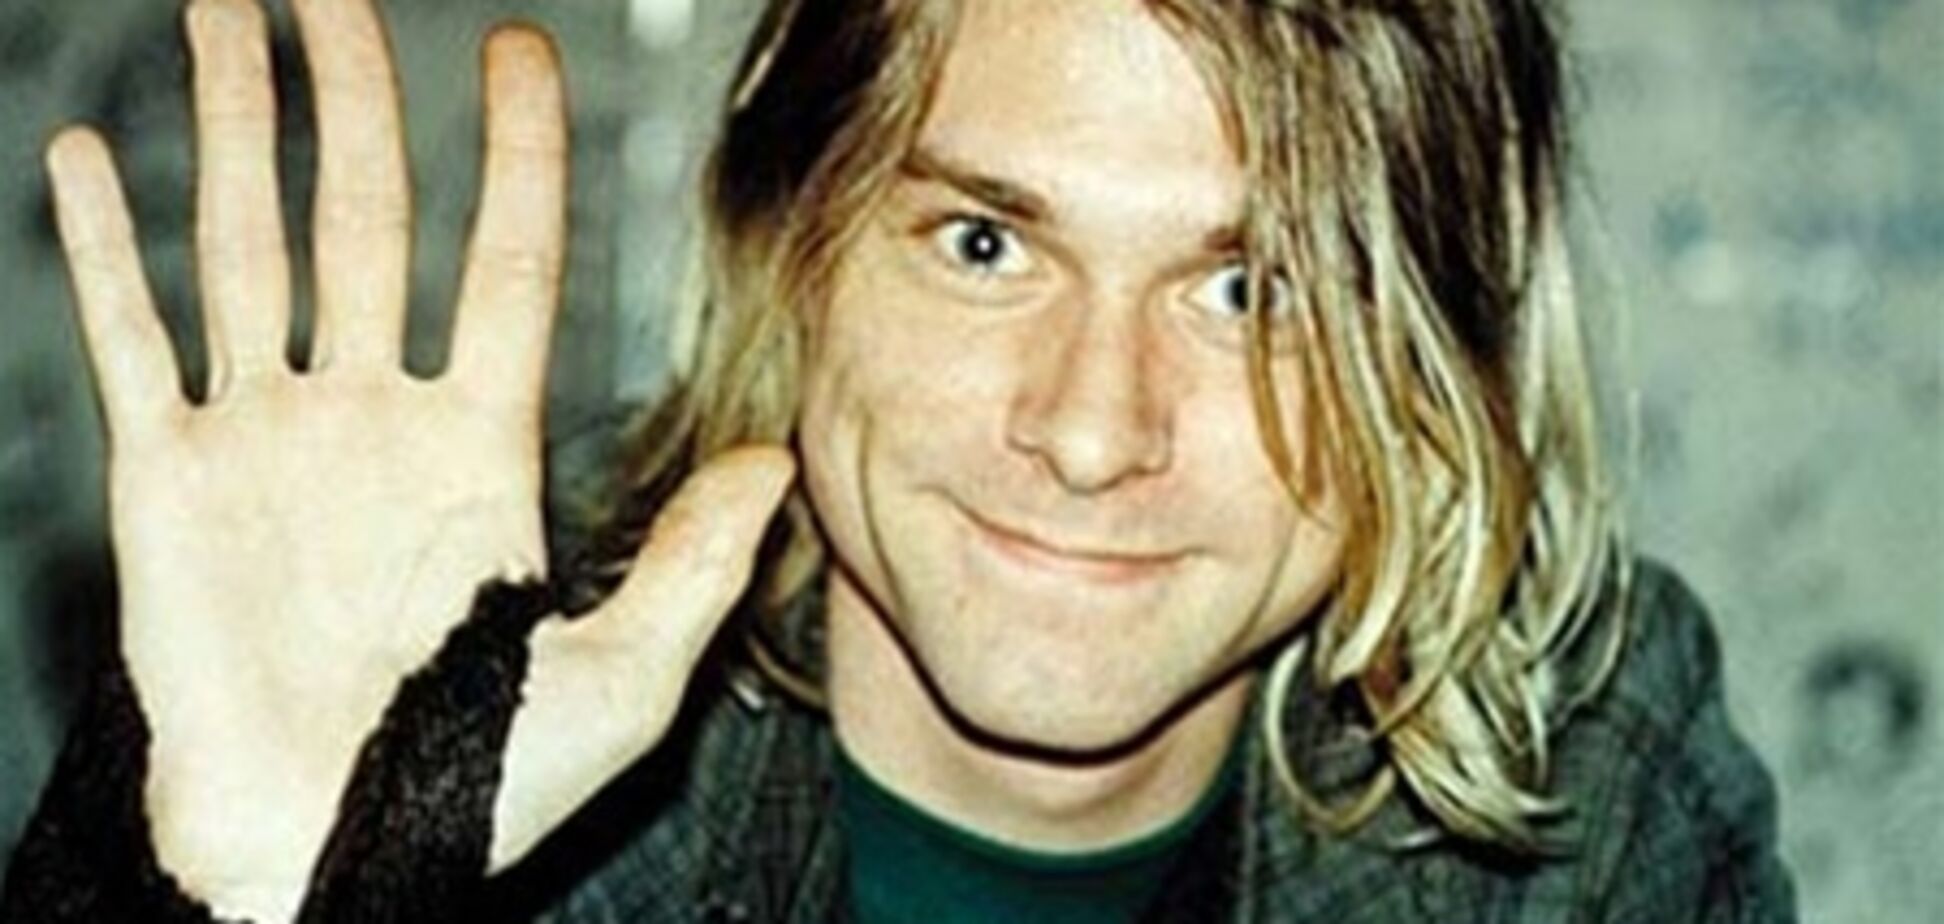 20 лютого вокалісту Nirvana Курту Кобейну виповнилося б 46 років